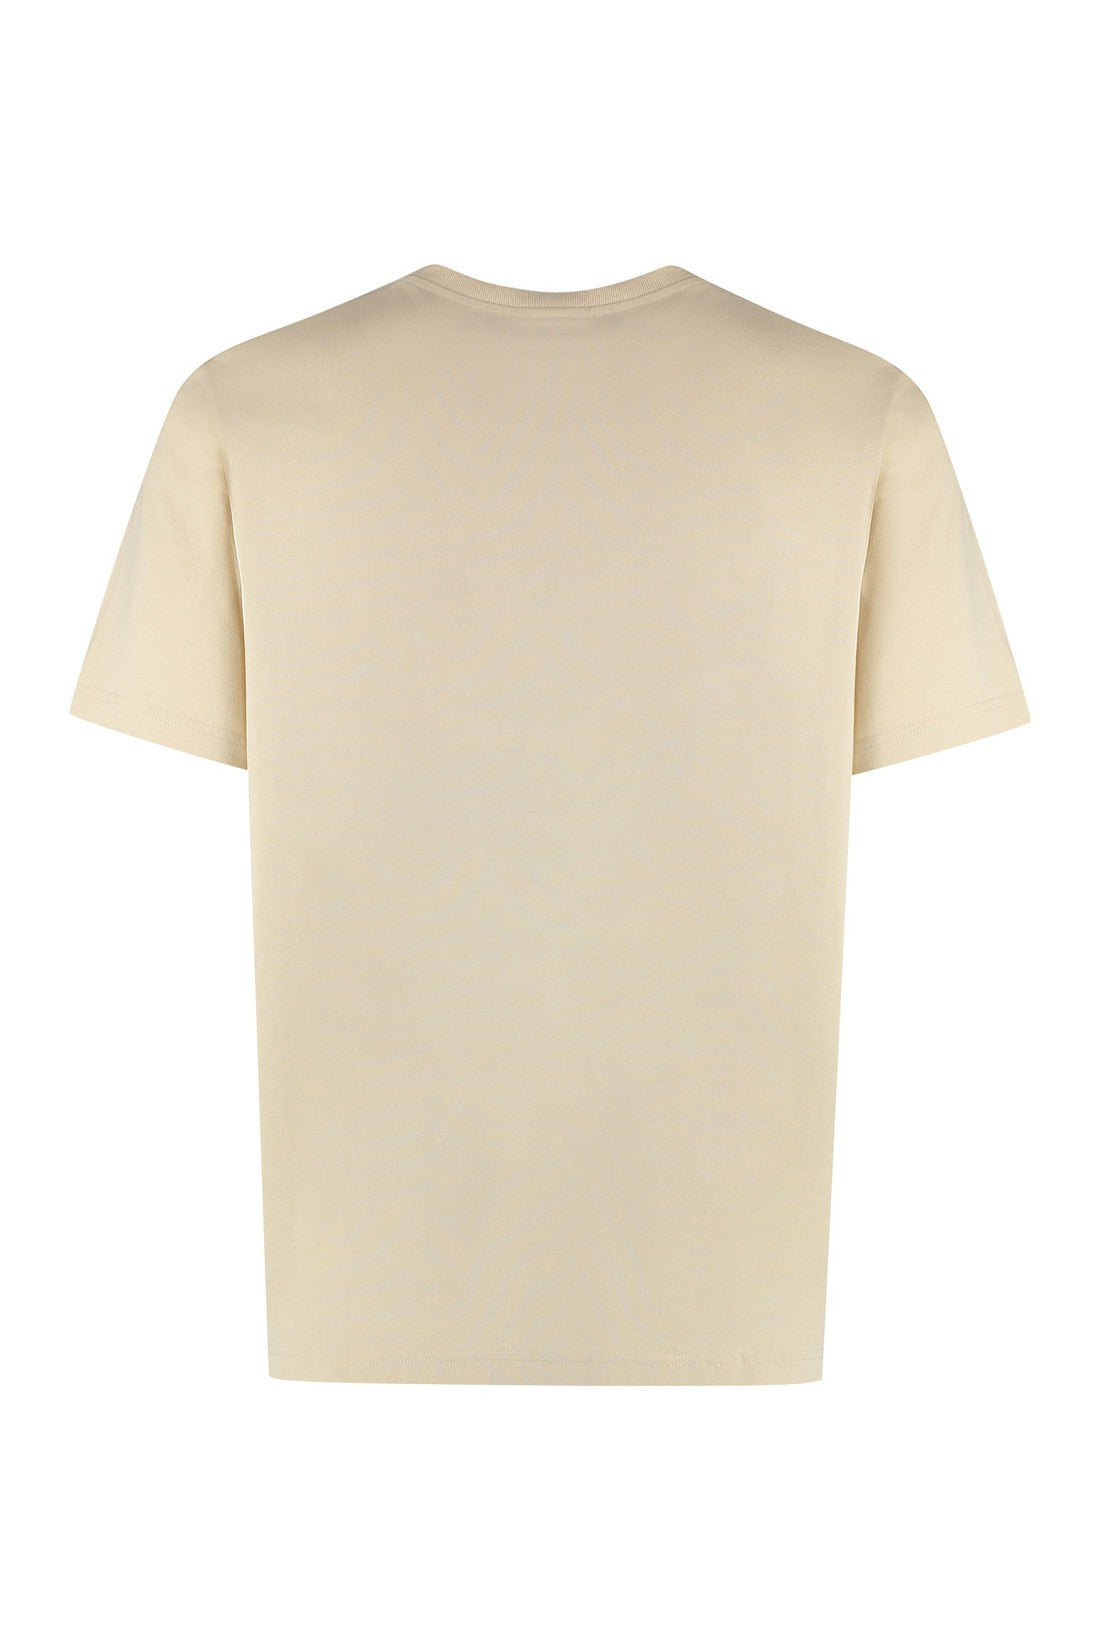 Maison Kitsuné-OUTLET-SALE-Printed cotton T-shirt-ARCHIVIST